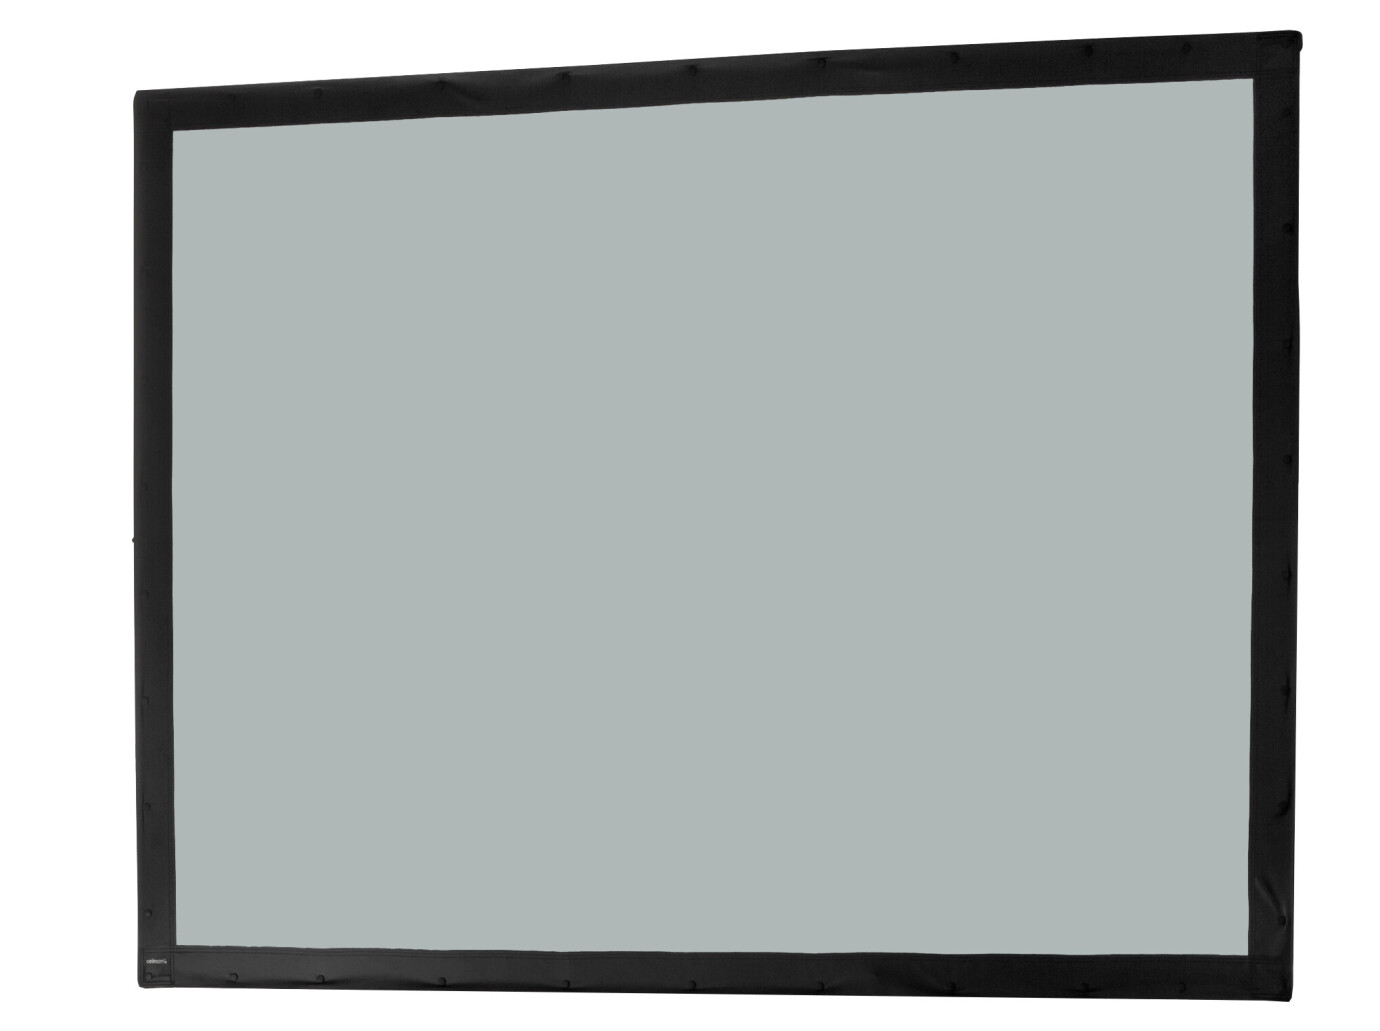 Toile 366 x 274 cm Ecran sur cadre celexon « Mobil Expert », projection arrière